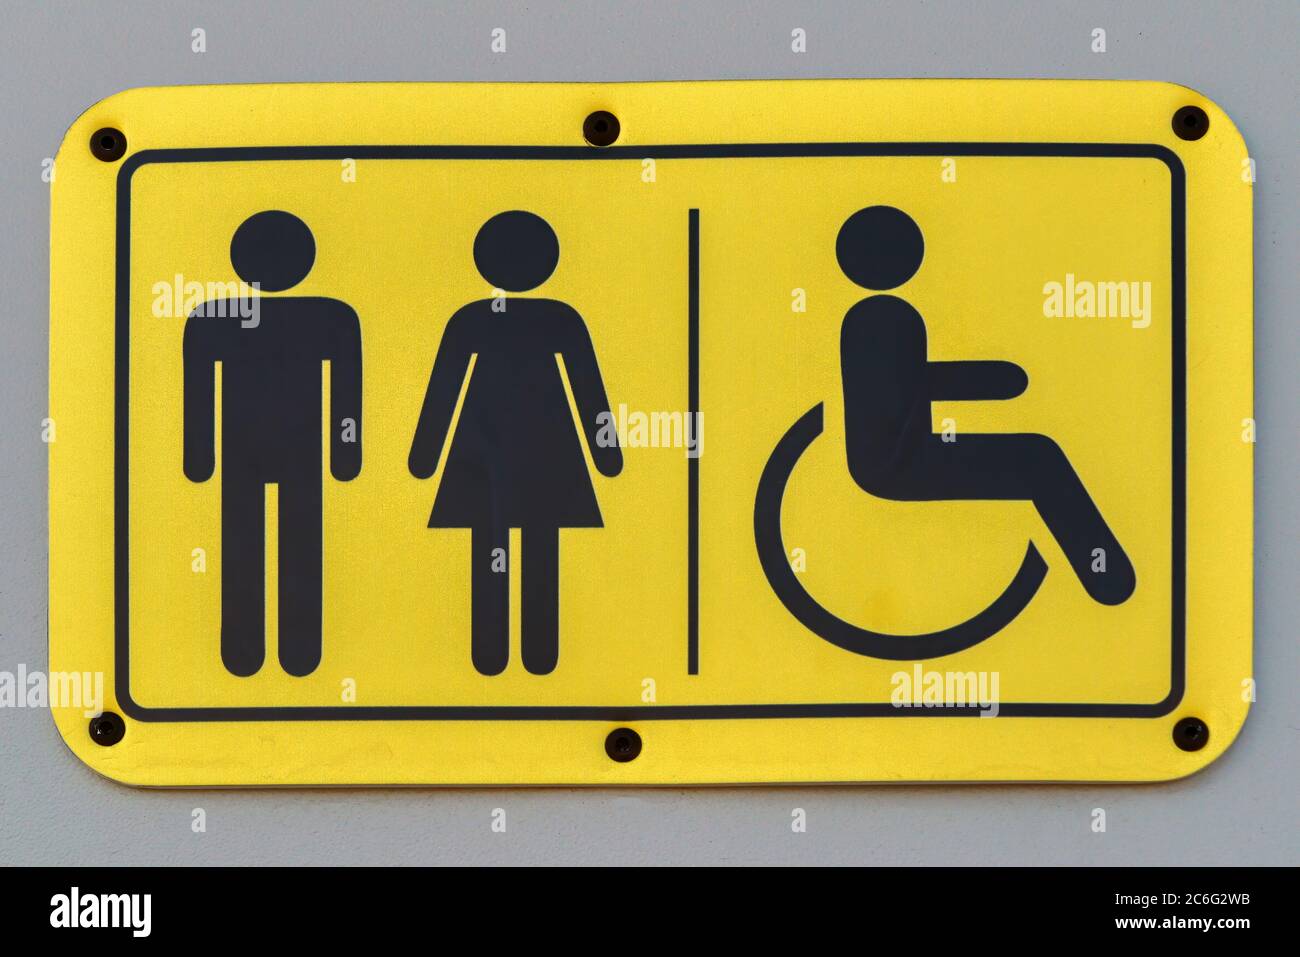 Une plaque avec des images symboliques d'un homme, d'une femme et d'une personne en fauteuil roulant. Banque D'Images